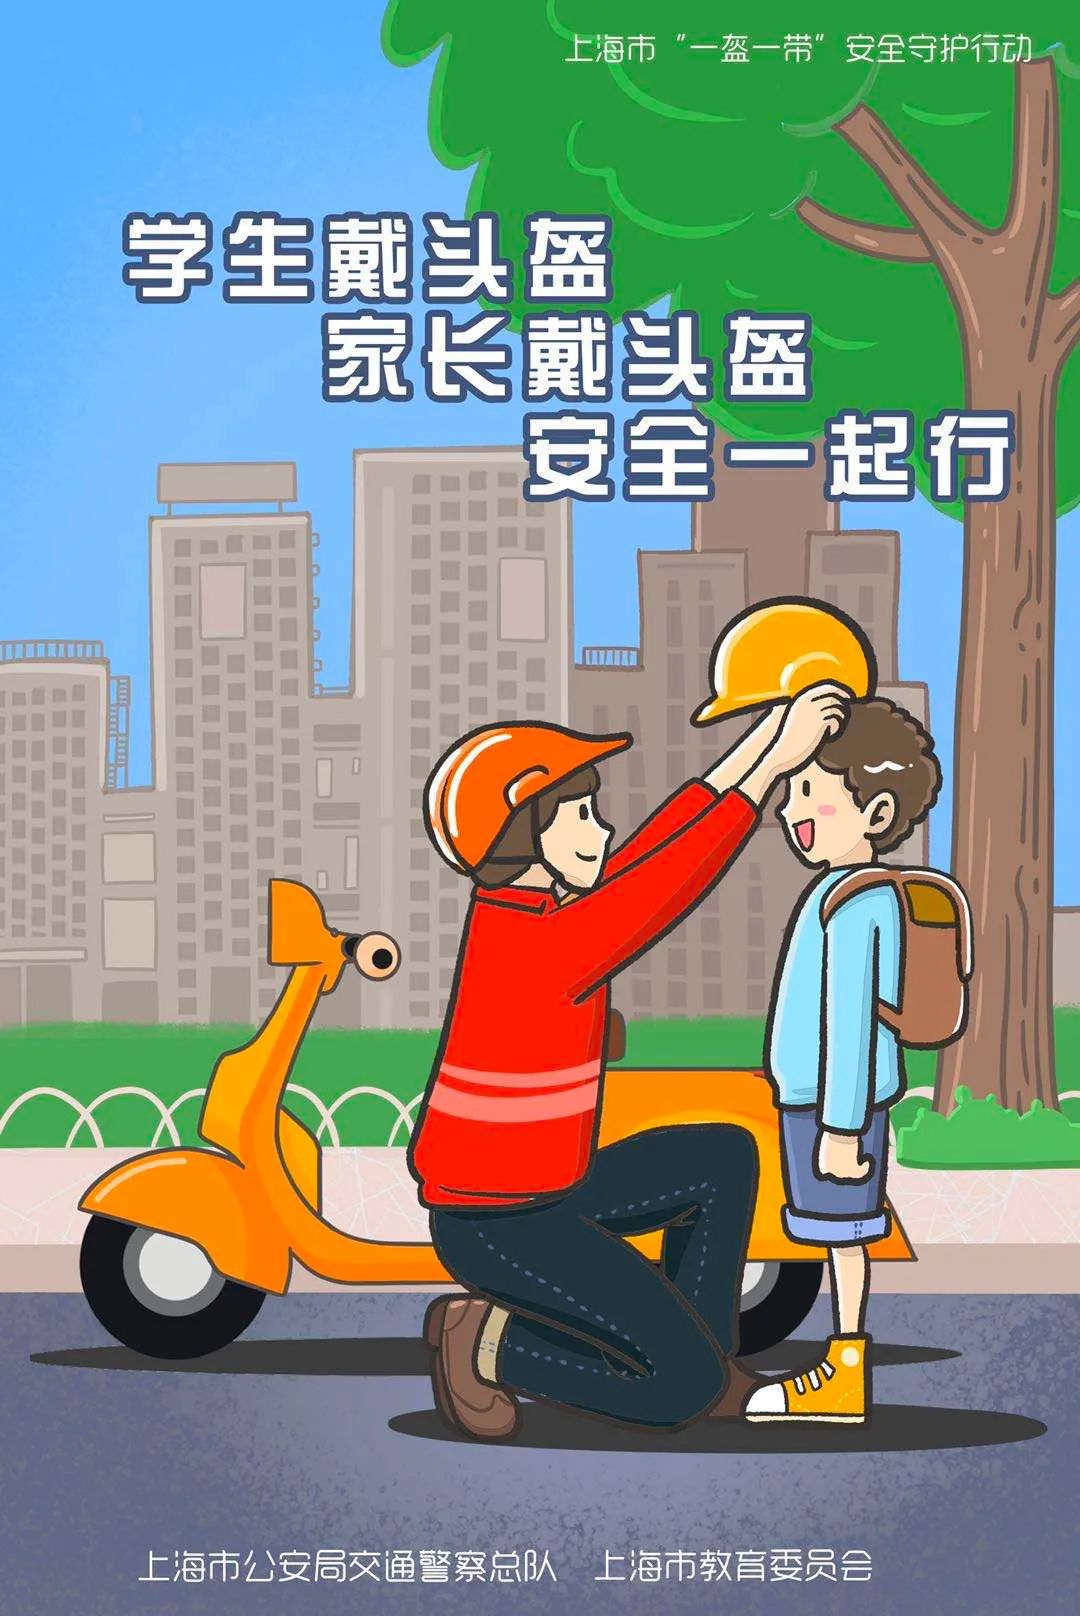 上海两部门发布:学生乘坐自行车需佩戴头盔!